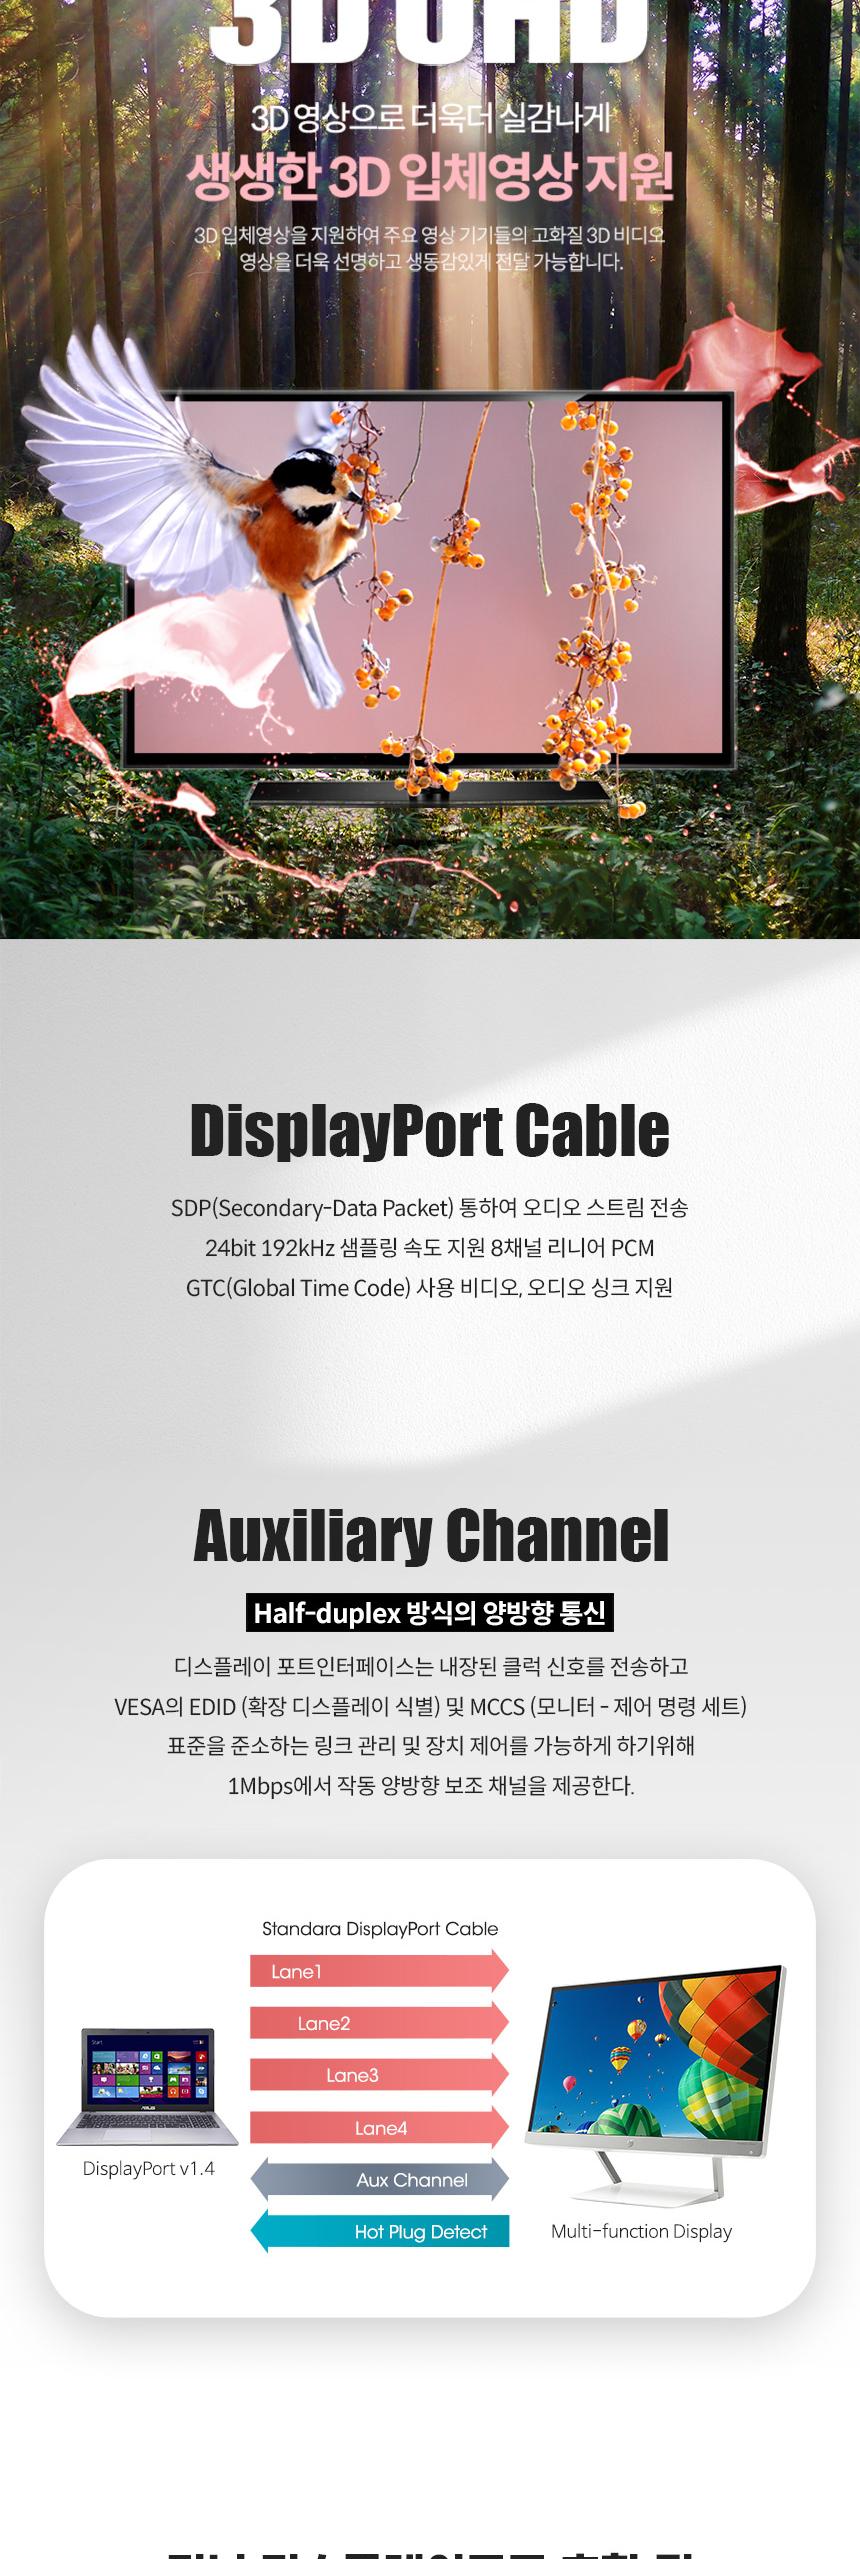 Coms ̴ ÷Ʈ ̺ 2M Mini DP V1.4 8K DisplayPort ÷̺ ̺ ÷Ʈ ÷Ʈ̺ ̺ ̺ ̺ DP̺ ̴ϵ÷Ʈ̺ ̴DP̺